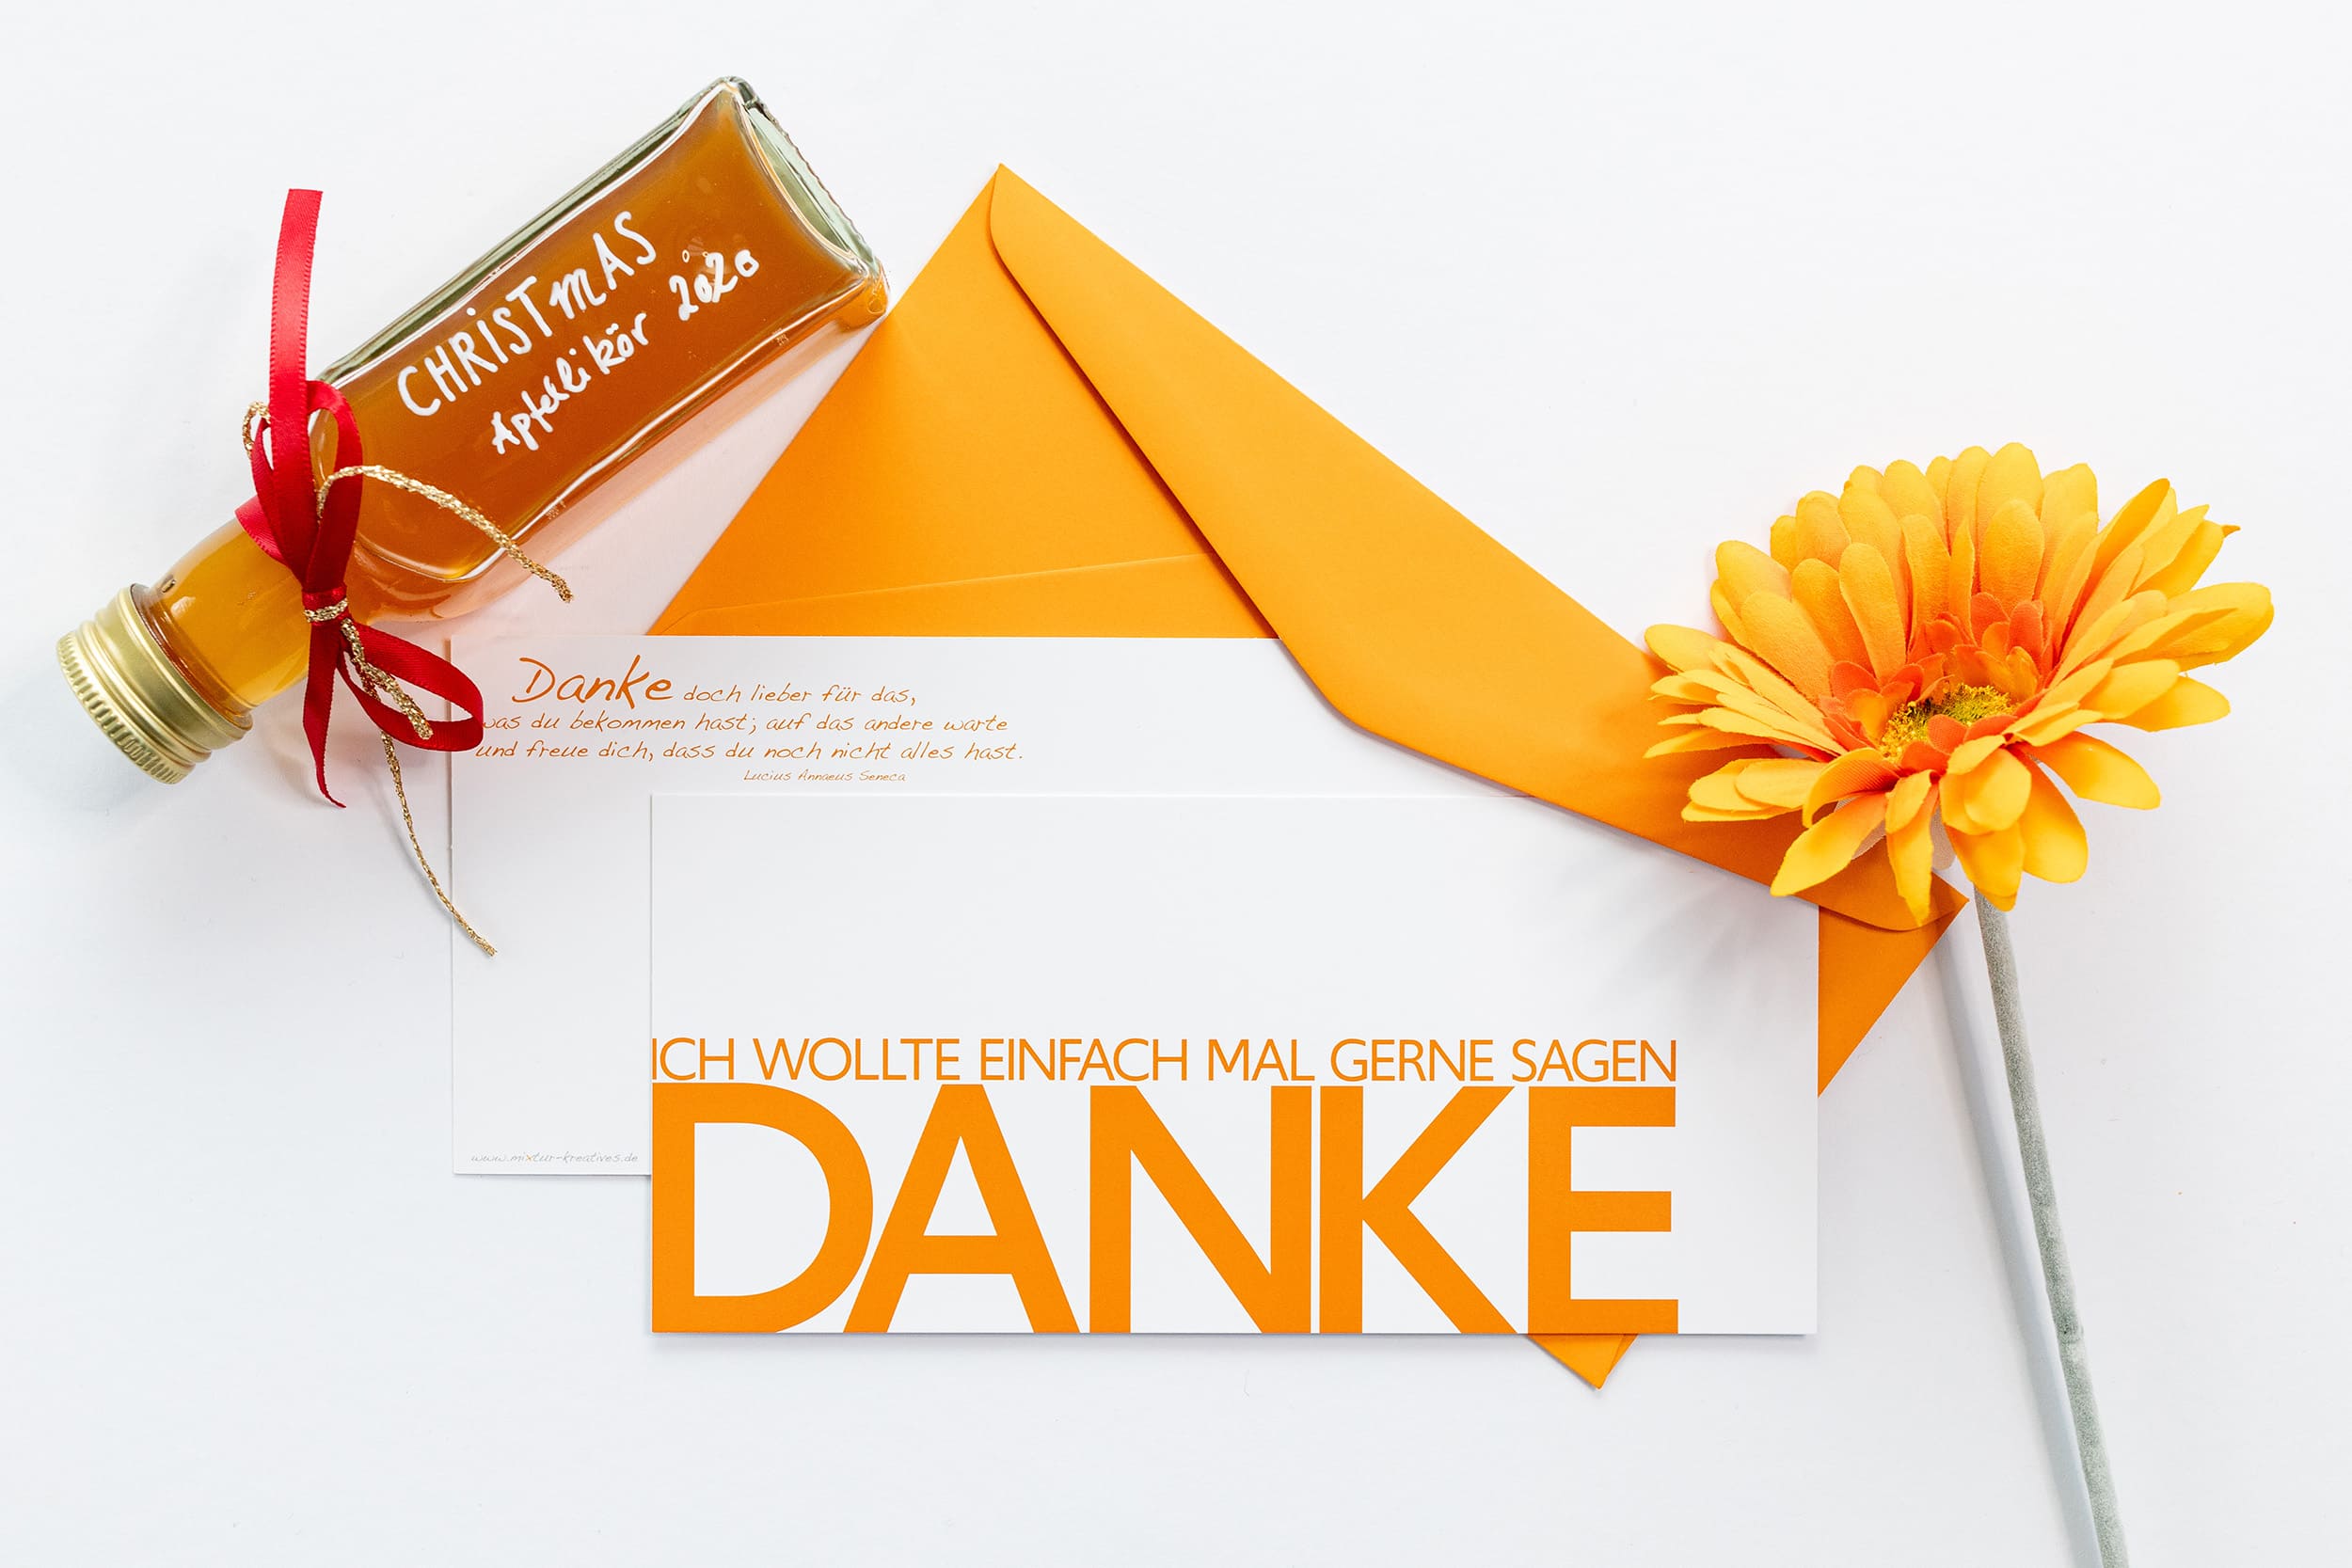 Grußkarte "DANKE" mit passenden Accessoires: Selbstgerechter Apfellikör und orange Gerbera